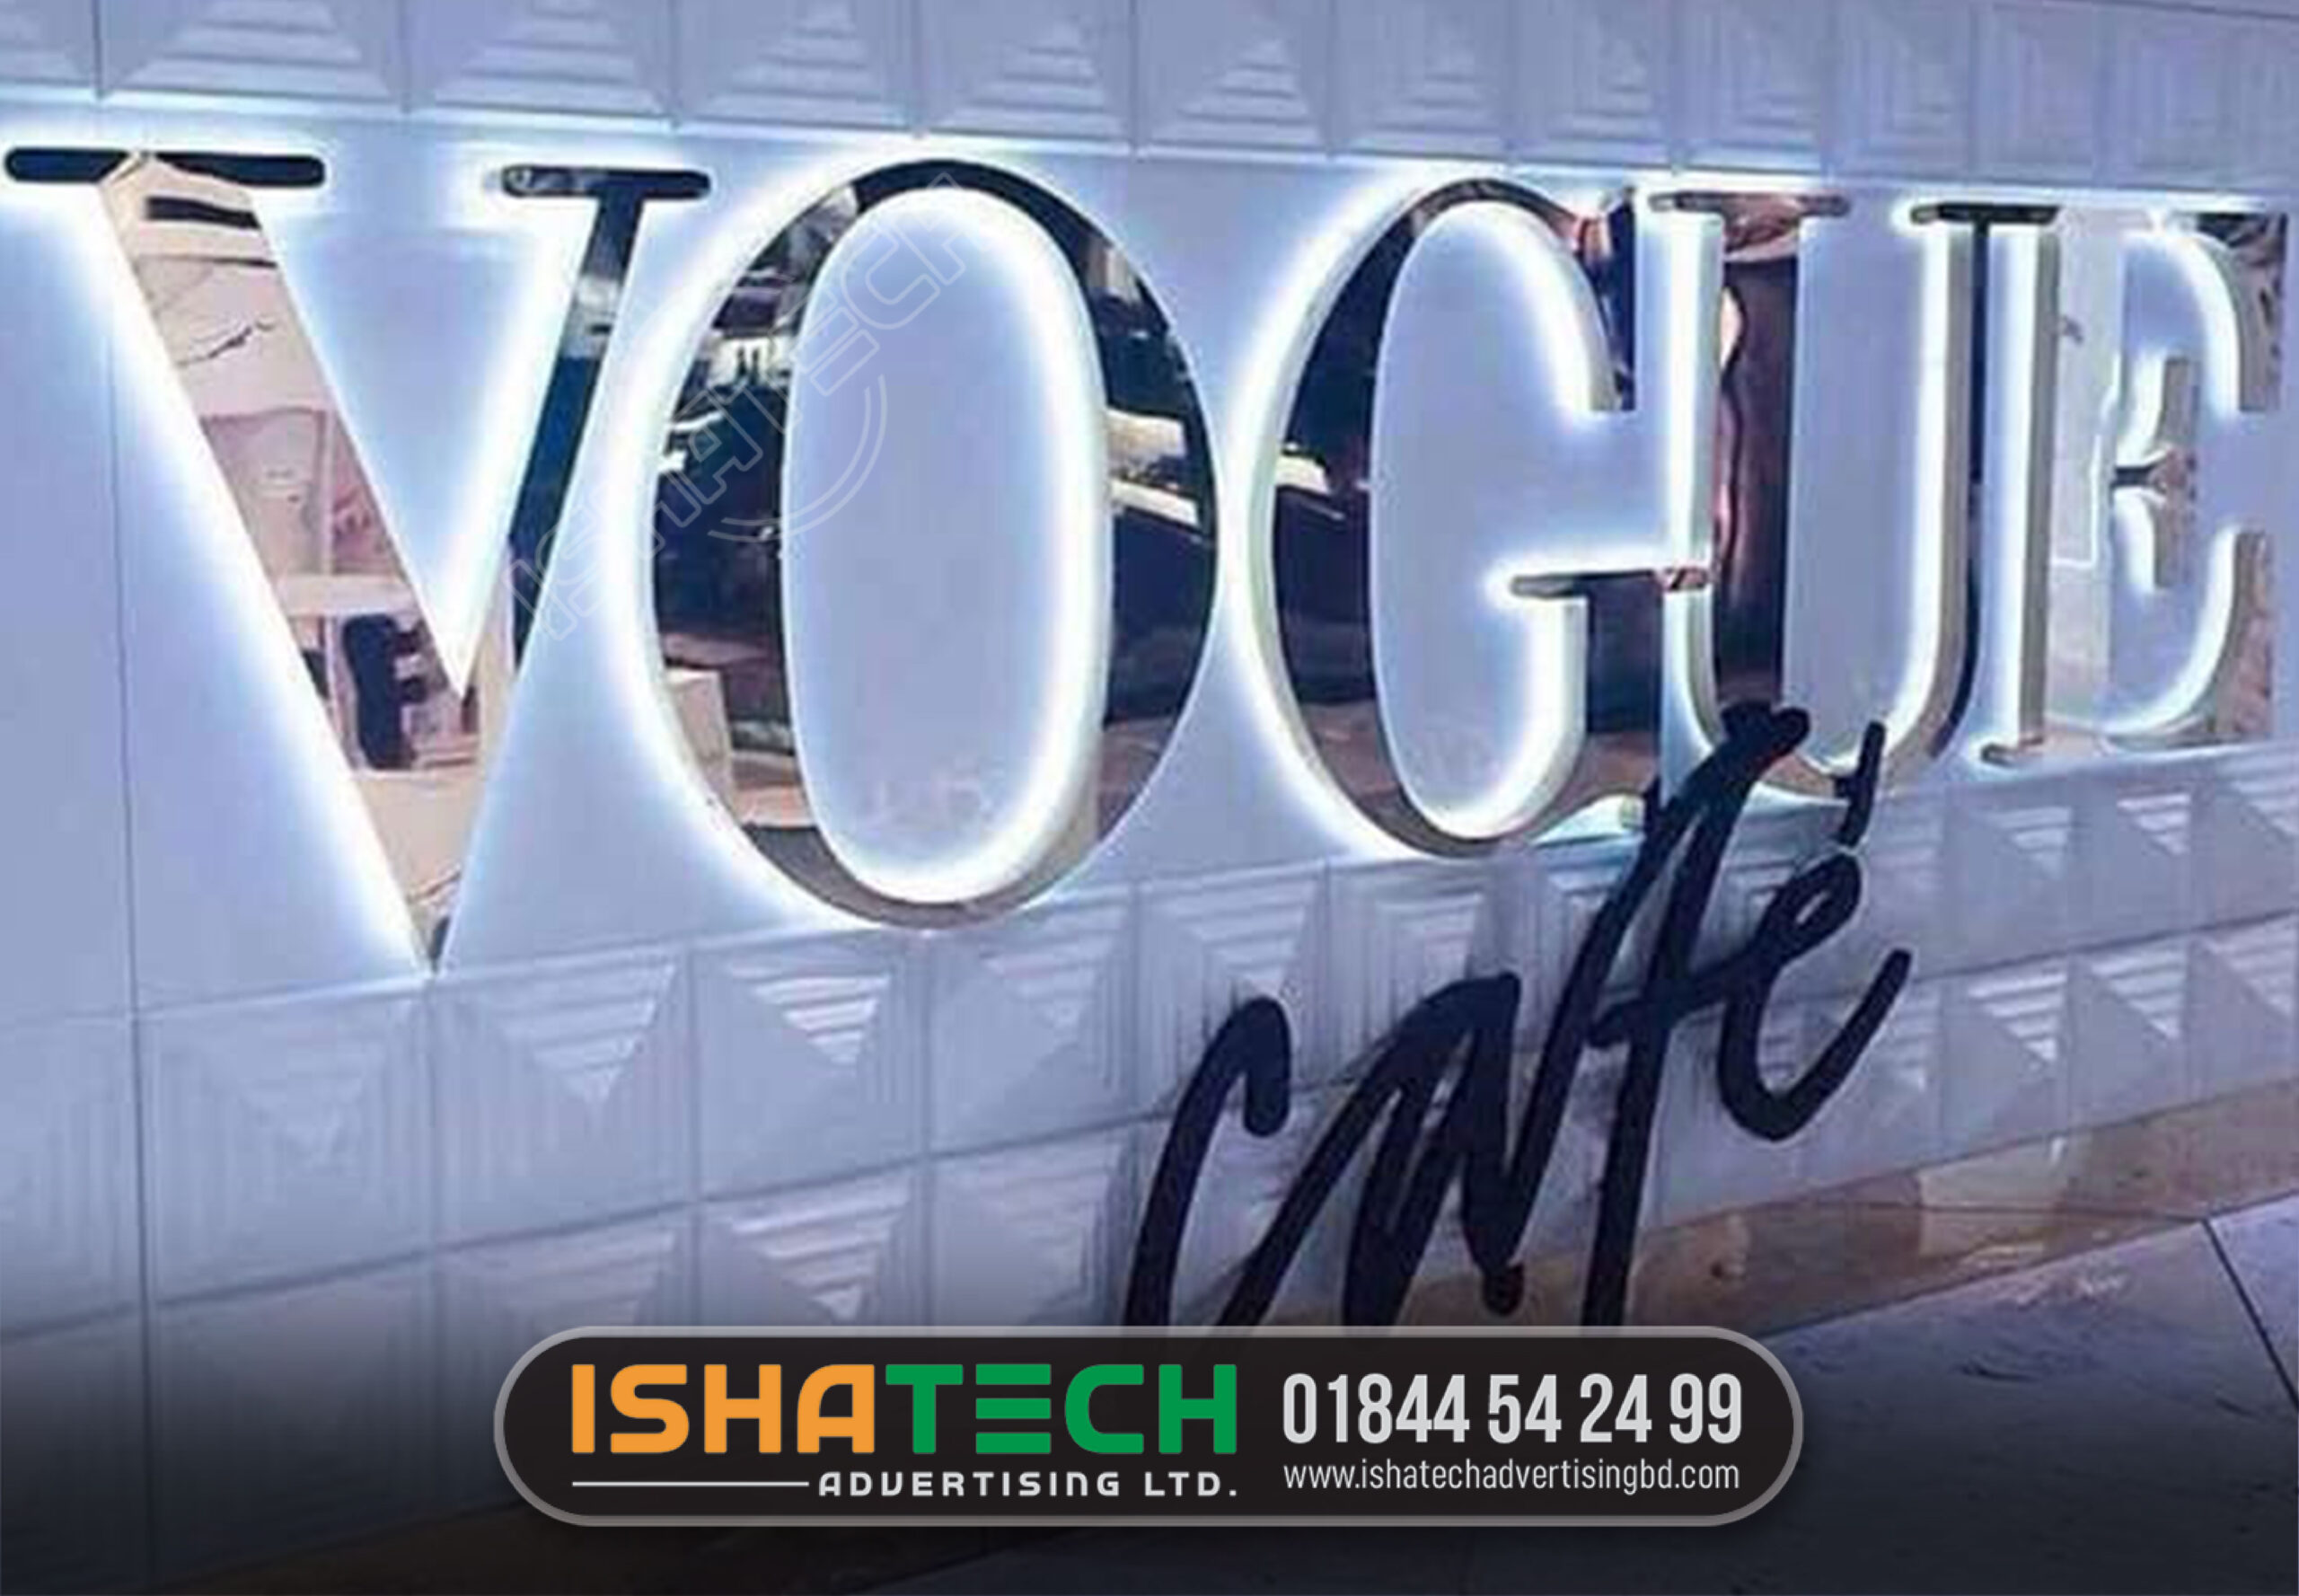 VOGUE CAFE STAINLESS STEEL BACK LIGHT LETTER SIGNAGE MAKING BD